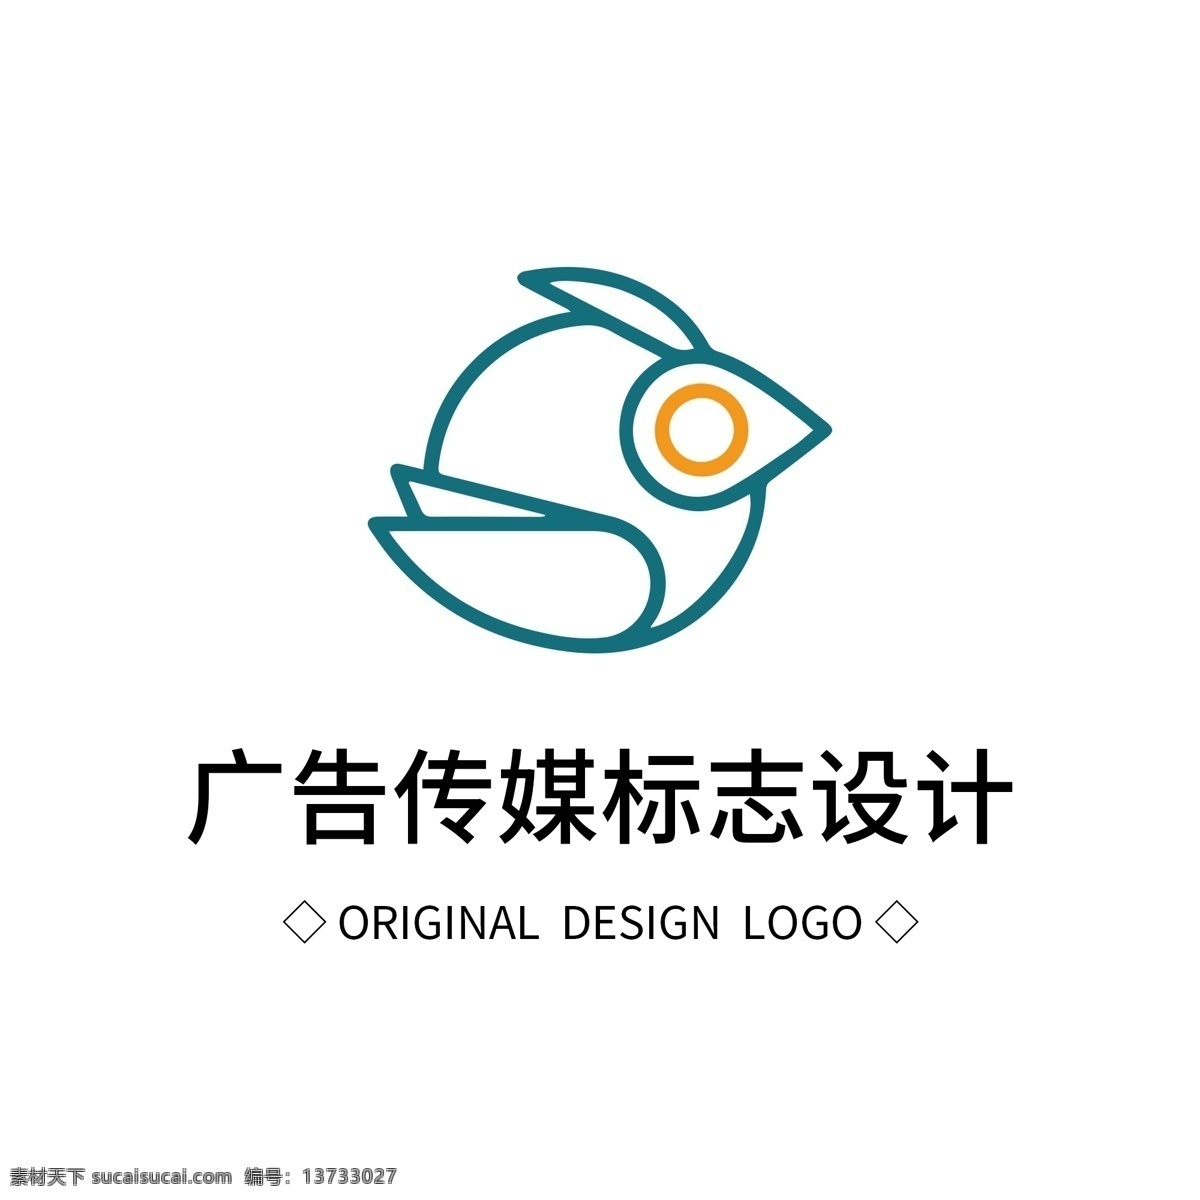 原创 广告 传媒 标志设计 logo 创意 简约 标识 标志 可商用 字体设计 元素 企业logo 公司logo 徽标 广告logo 设计logo 创意logo 彩色 广告公司 宣传 鸟logo